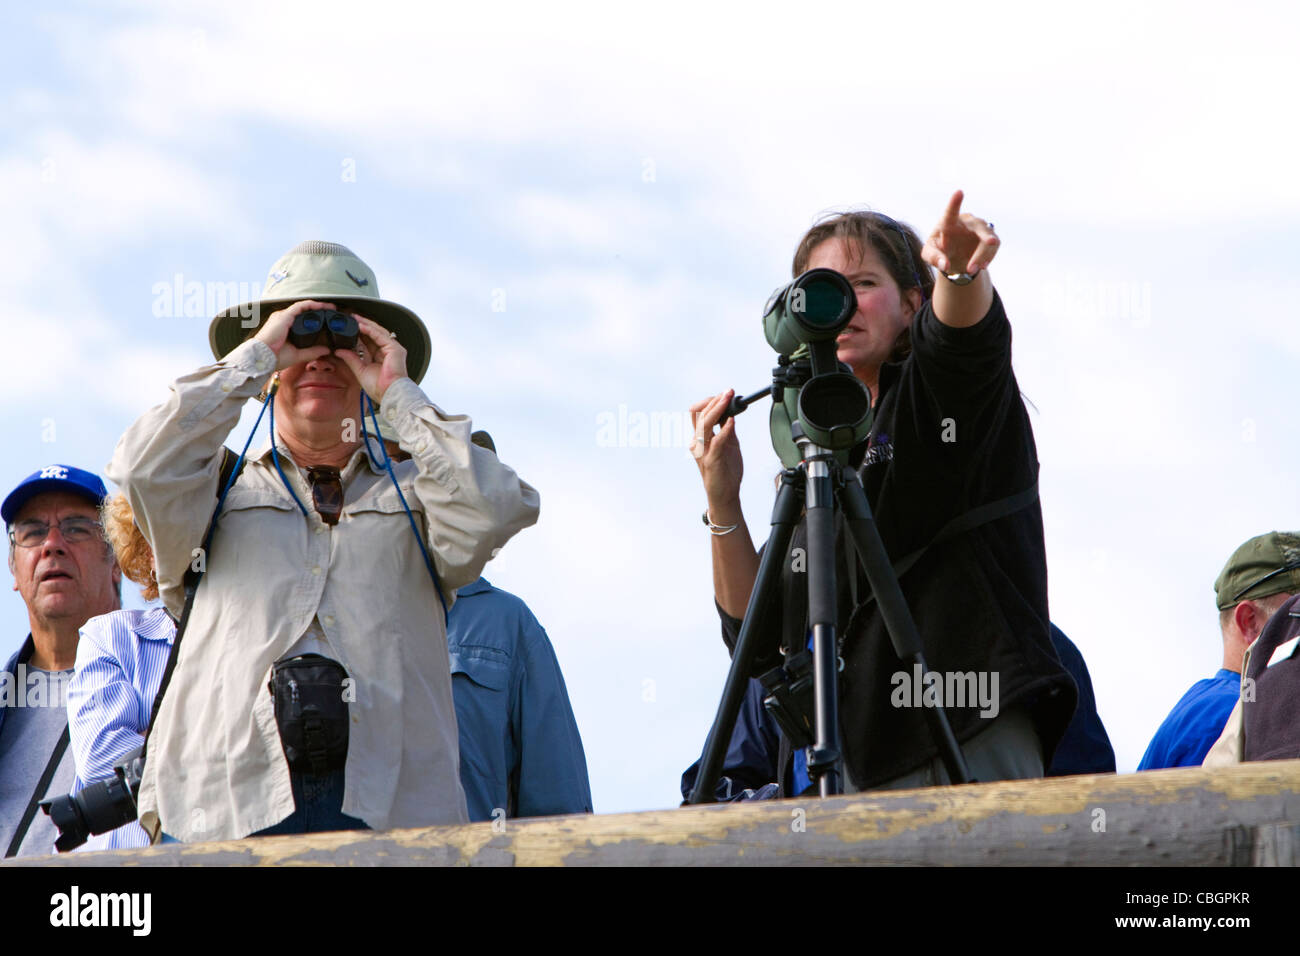 Les touristes d'observer des animaux sauvages dans le Parc National de Yellowstone, aux États-Unis. Banque D'Images